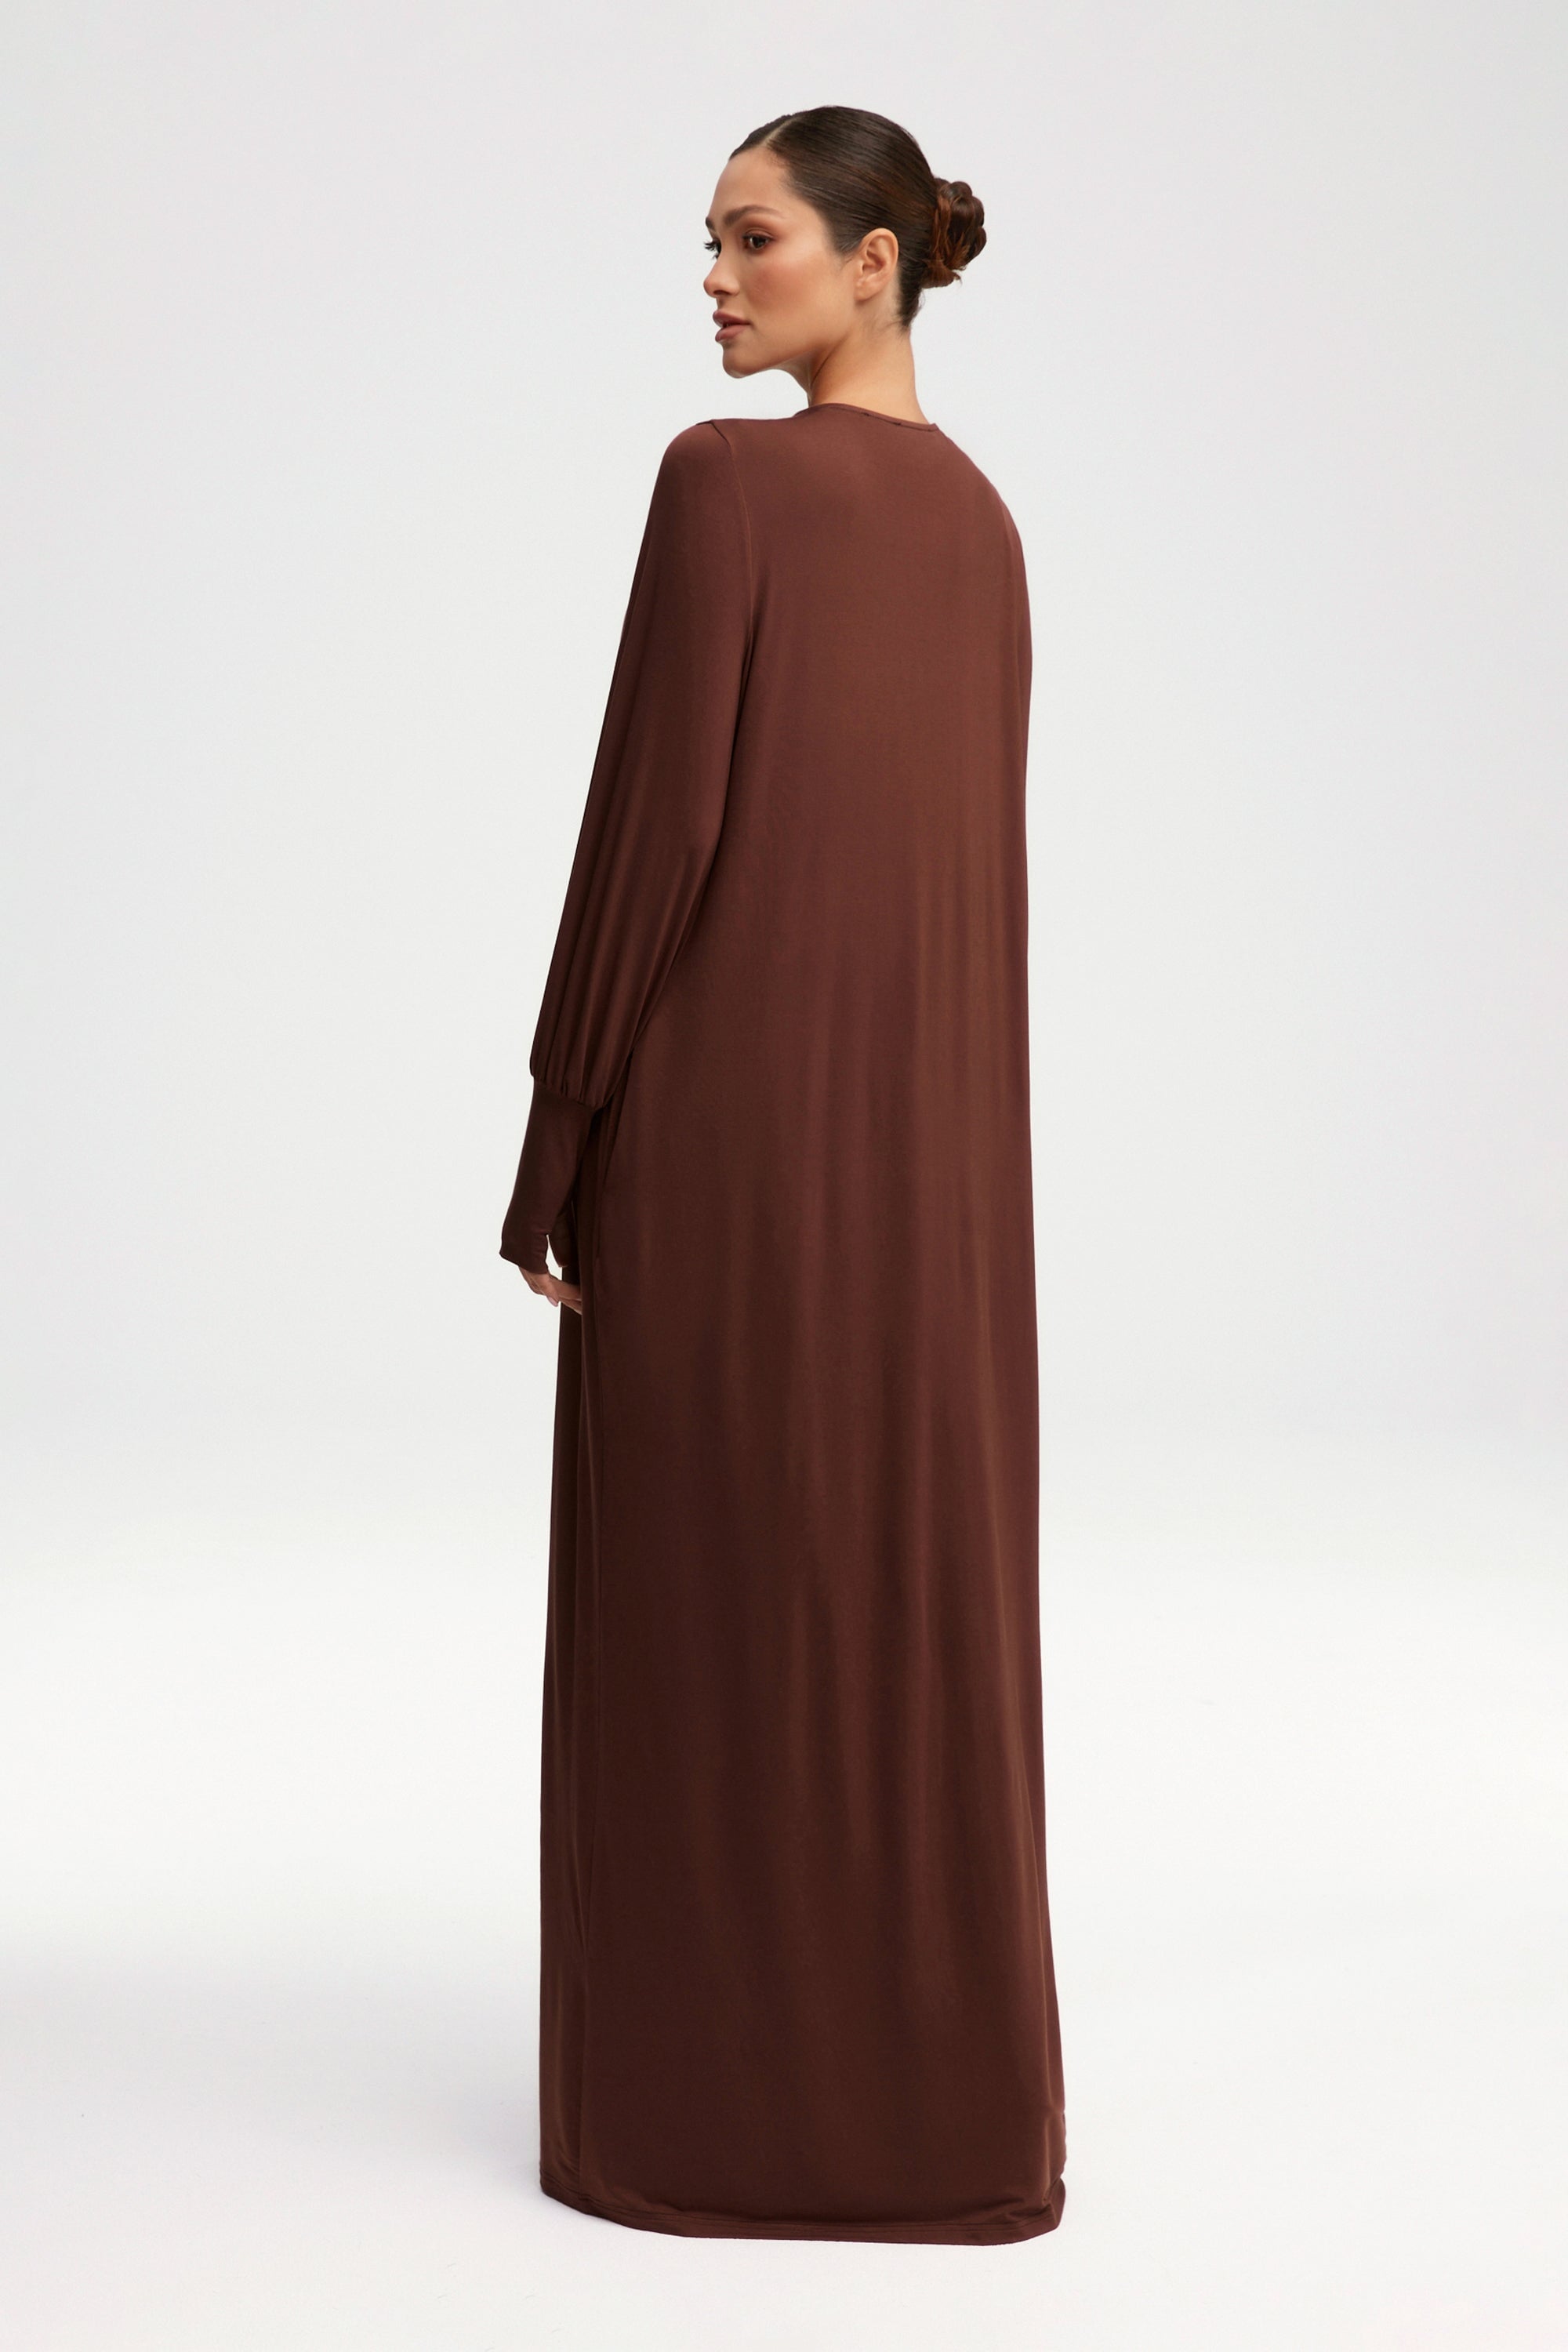 Jenin Jersey Open Abaya & Maxi Dress Set - Chocolate Clothing saigonodysseyhotel 